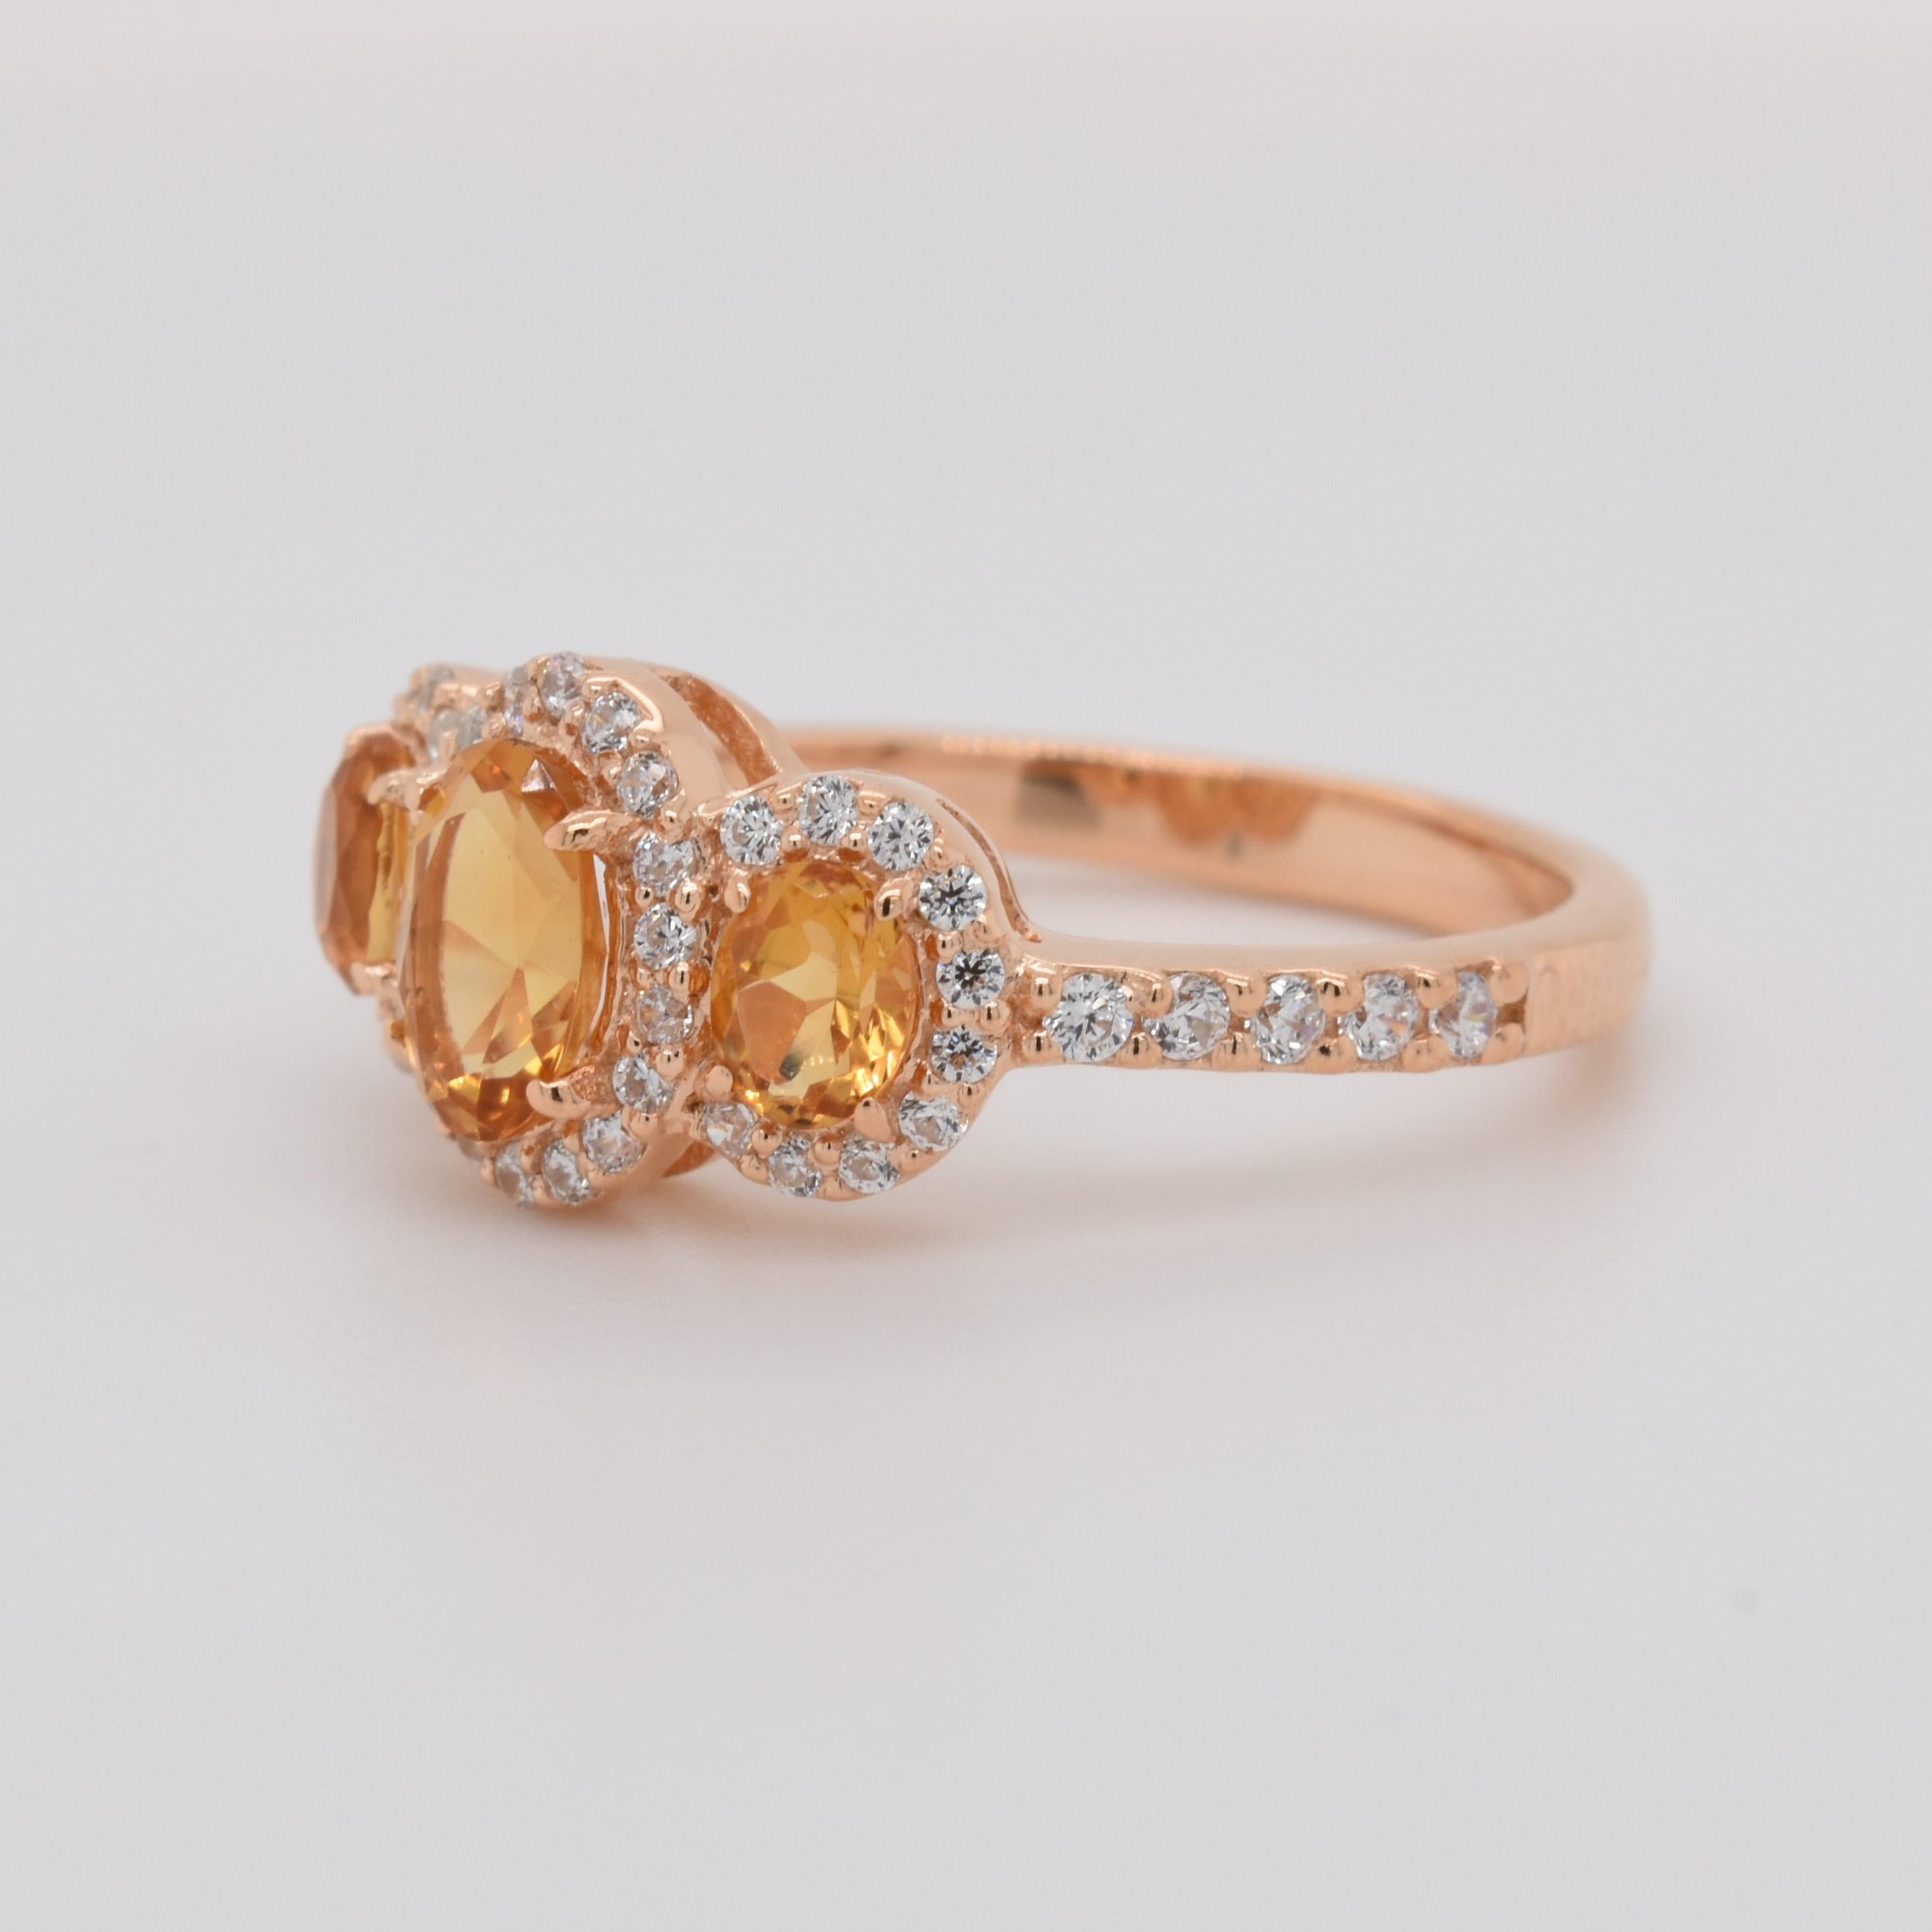 Ovale Form Citrin Edelstein und CZ schön in einem Ring gefertigt. Eine feurige gelbe Farbe November Birthstone. Für einen besonderen Anlass wie Verlobung oder Heiratsantrag oder als Geschenk für einen besonderen Menschen.

Name des Hauptsteins -